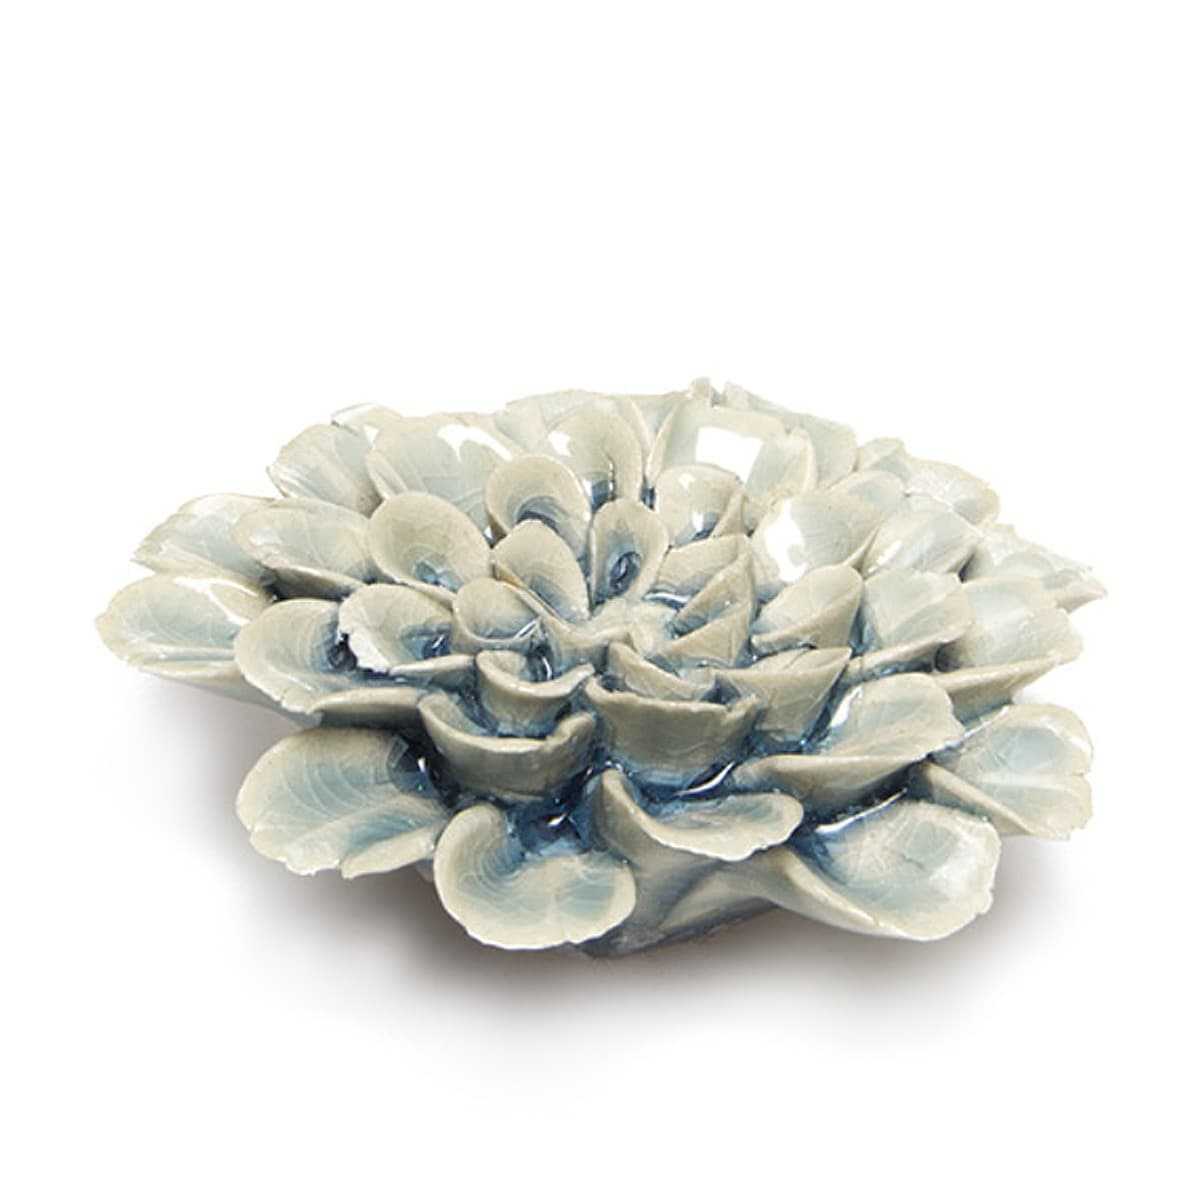 Fleur corail en céramique 7,5cm - Bleu